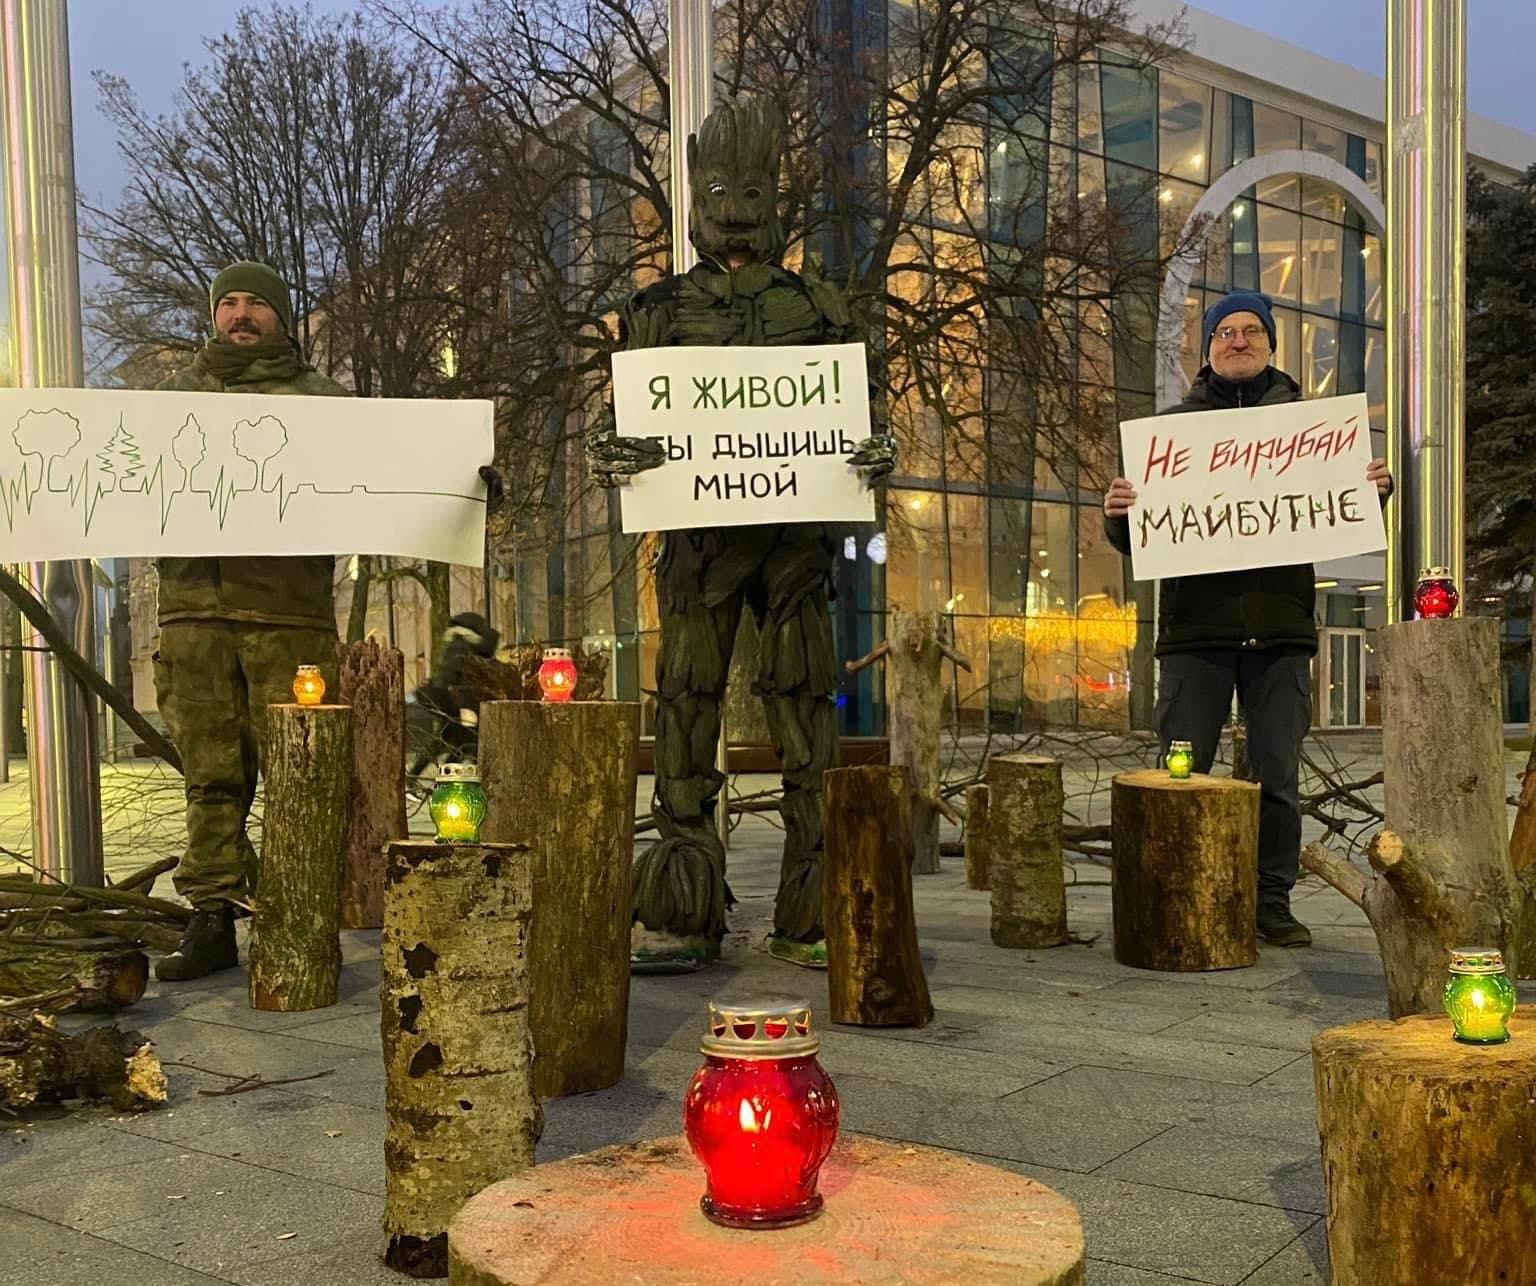 В центре города вышли на протест против вырубки деревьев